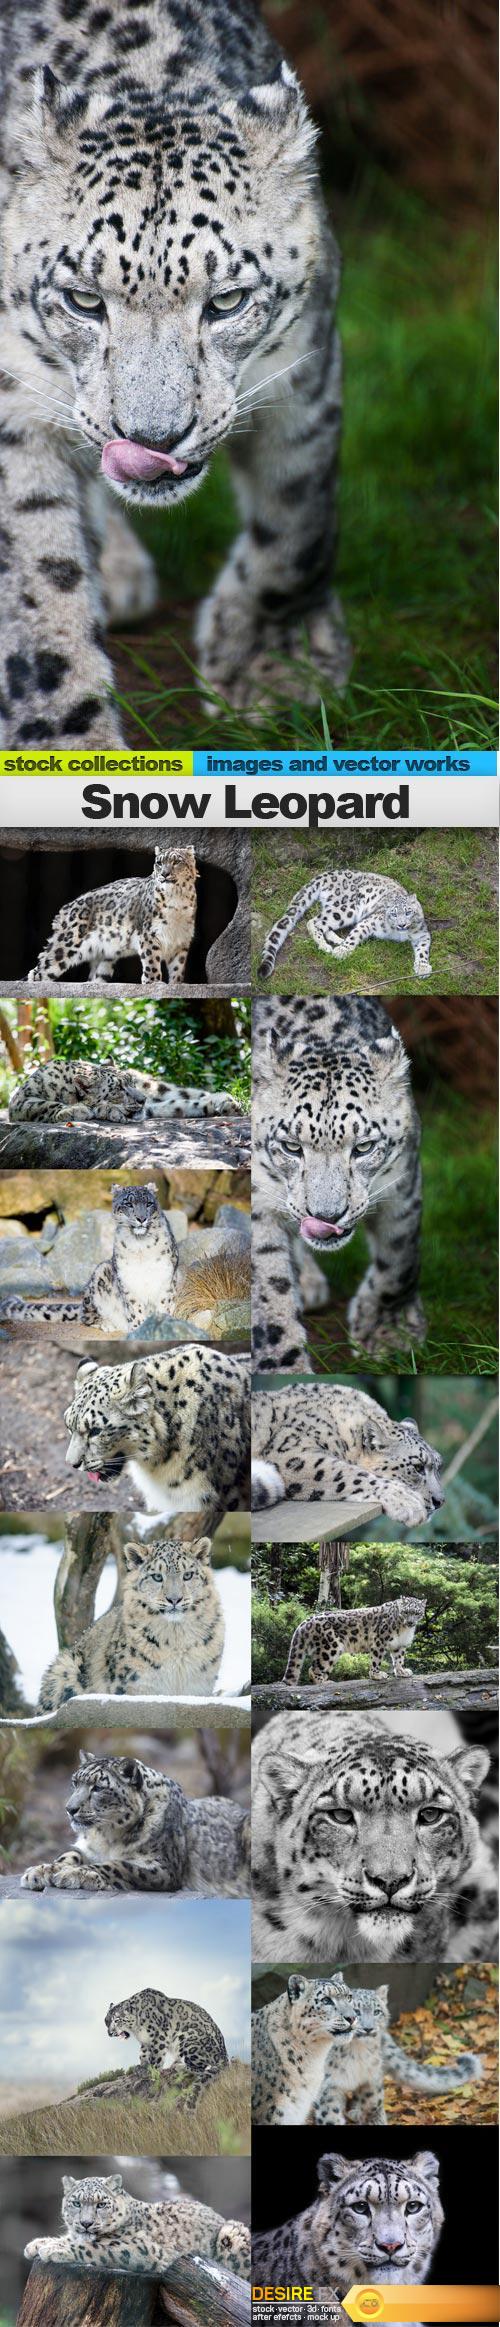 Snow Leopard, 15 x UHQ JPEG